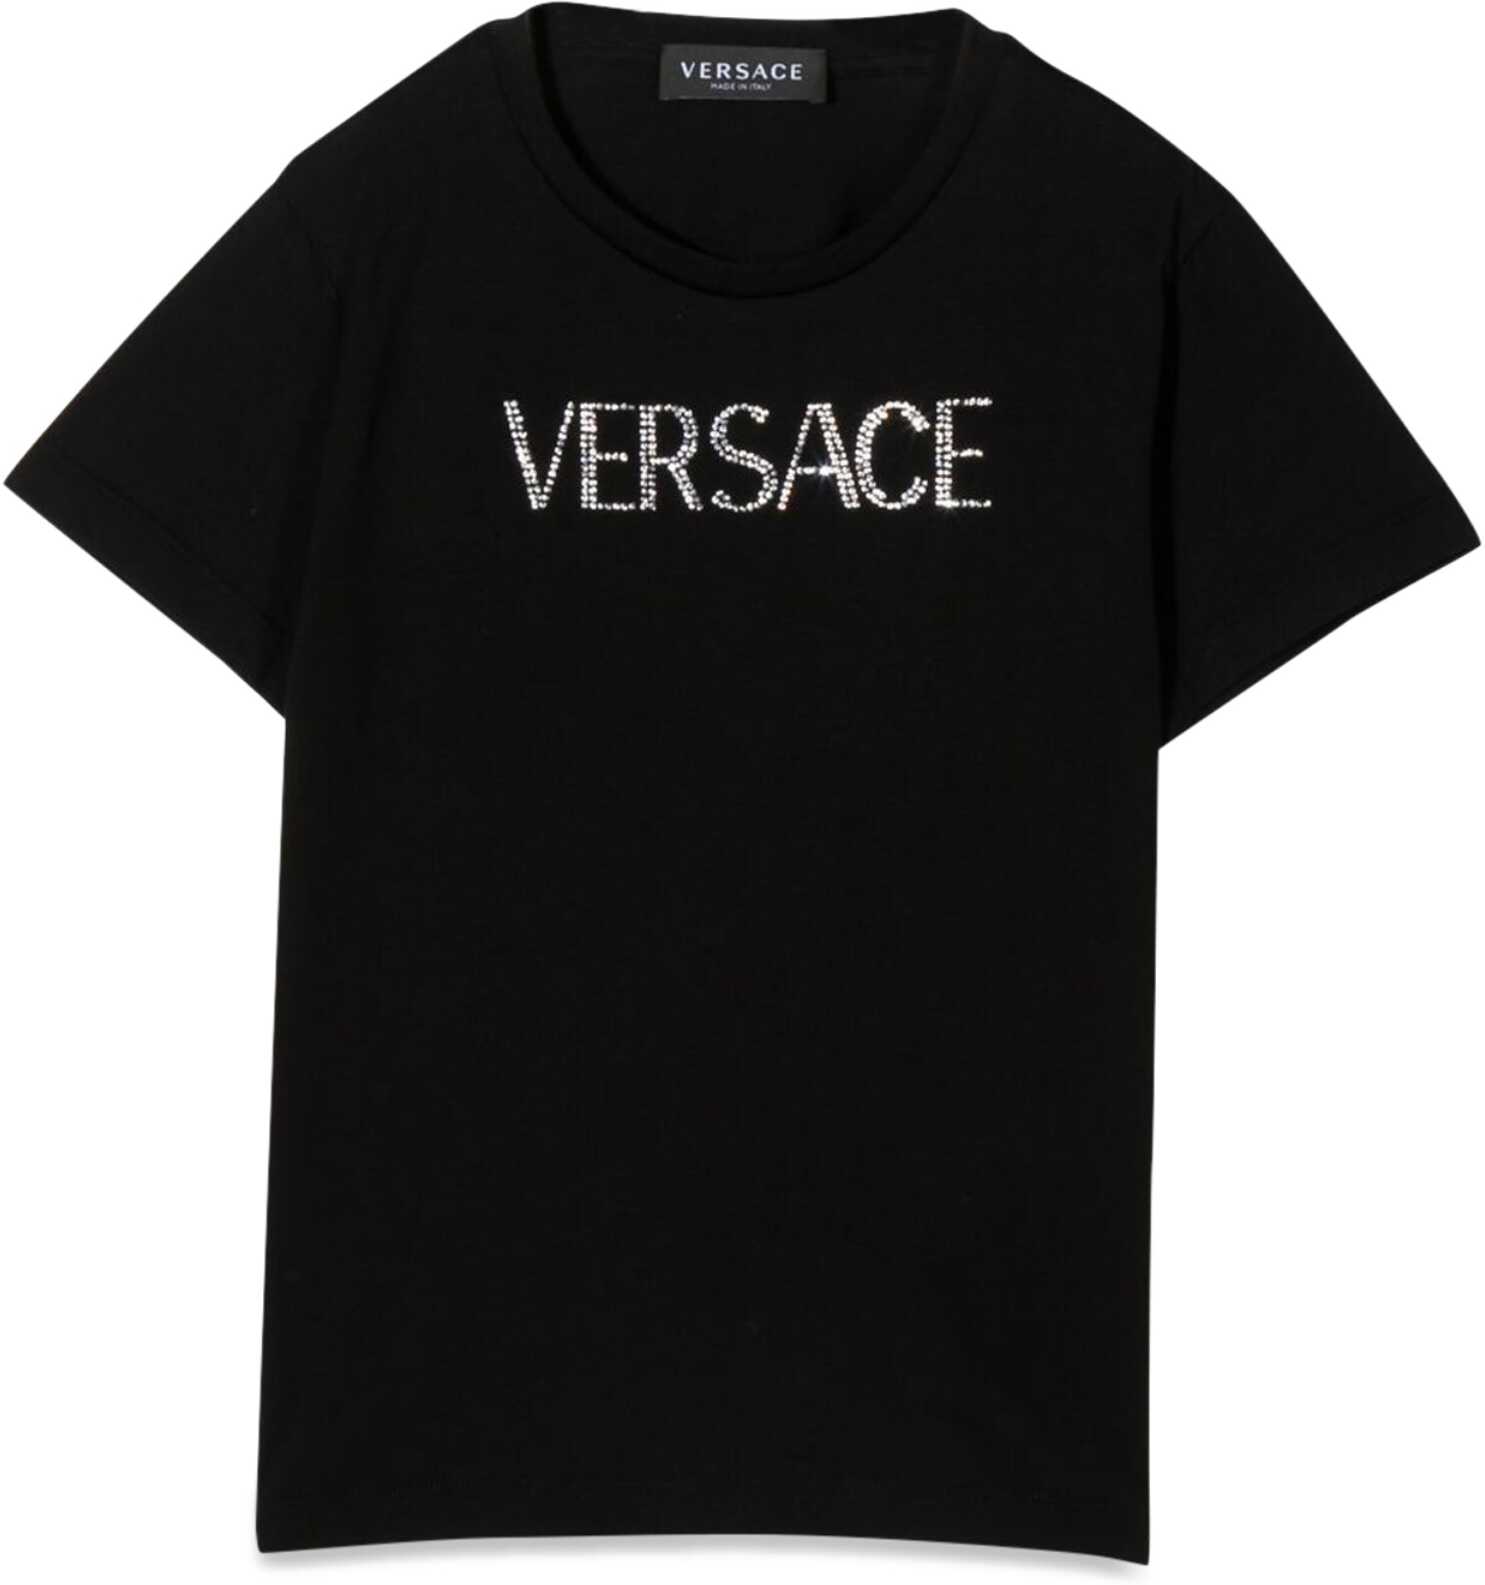 Poze Versace T-Shirt M/C BLACK